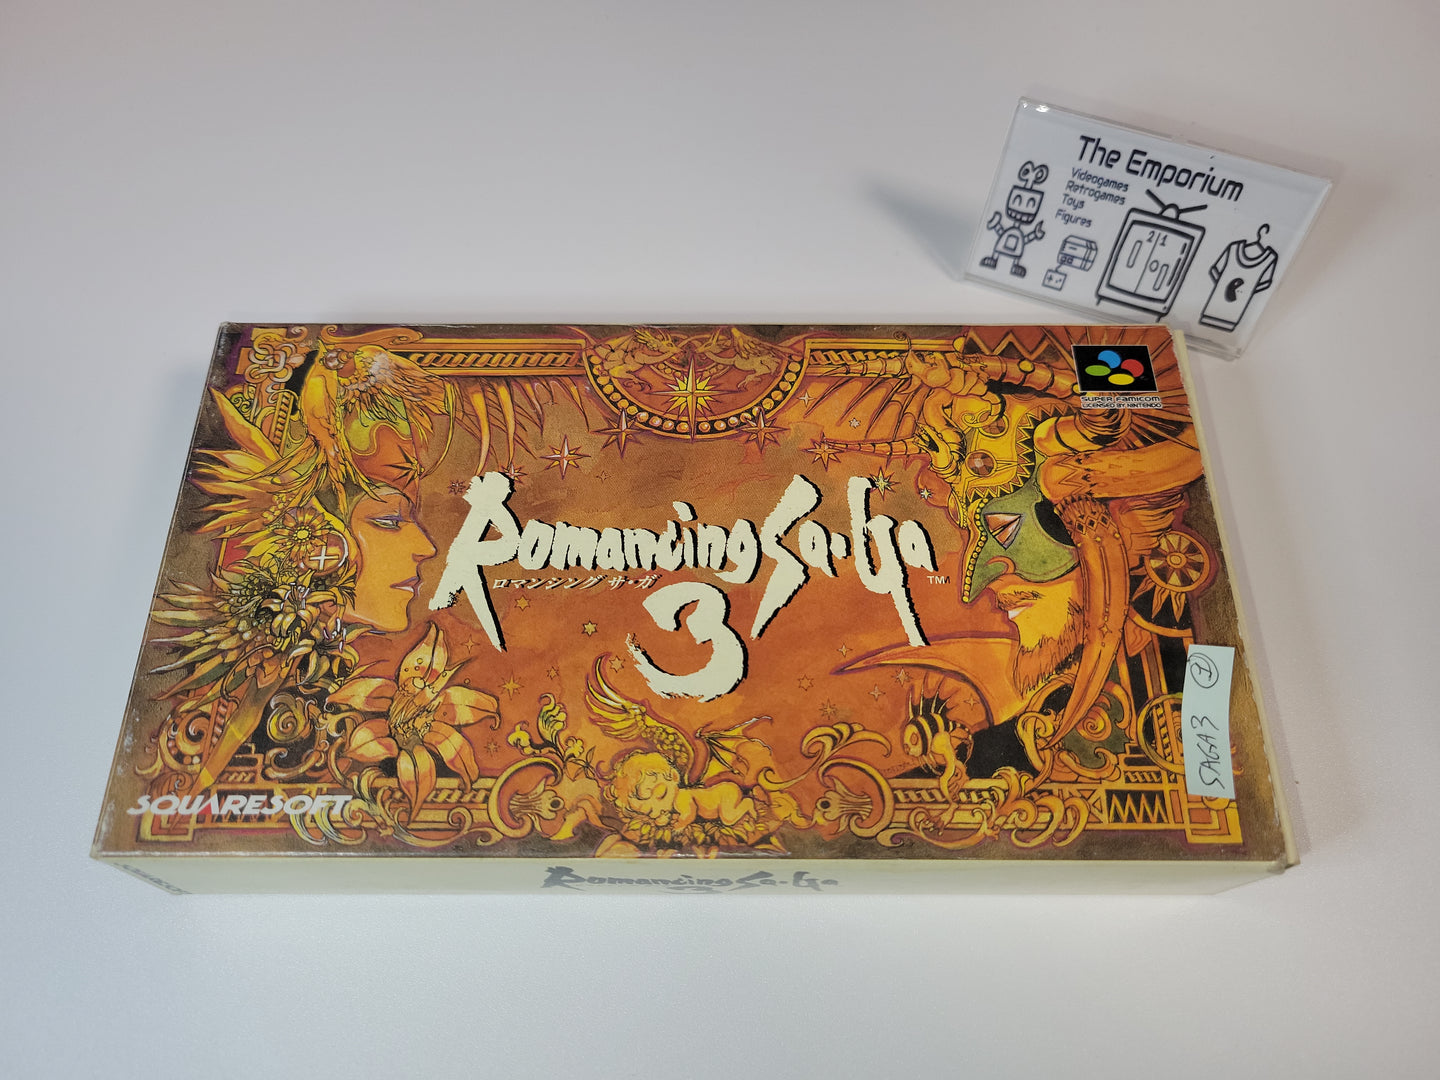 Romancing Saga 3 - Nintendo Sfc Super Famicom